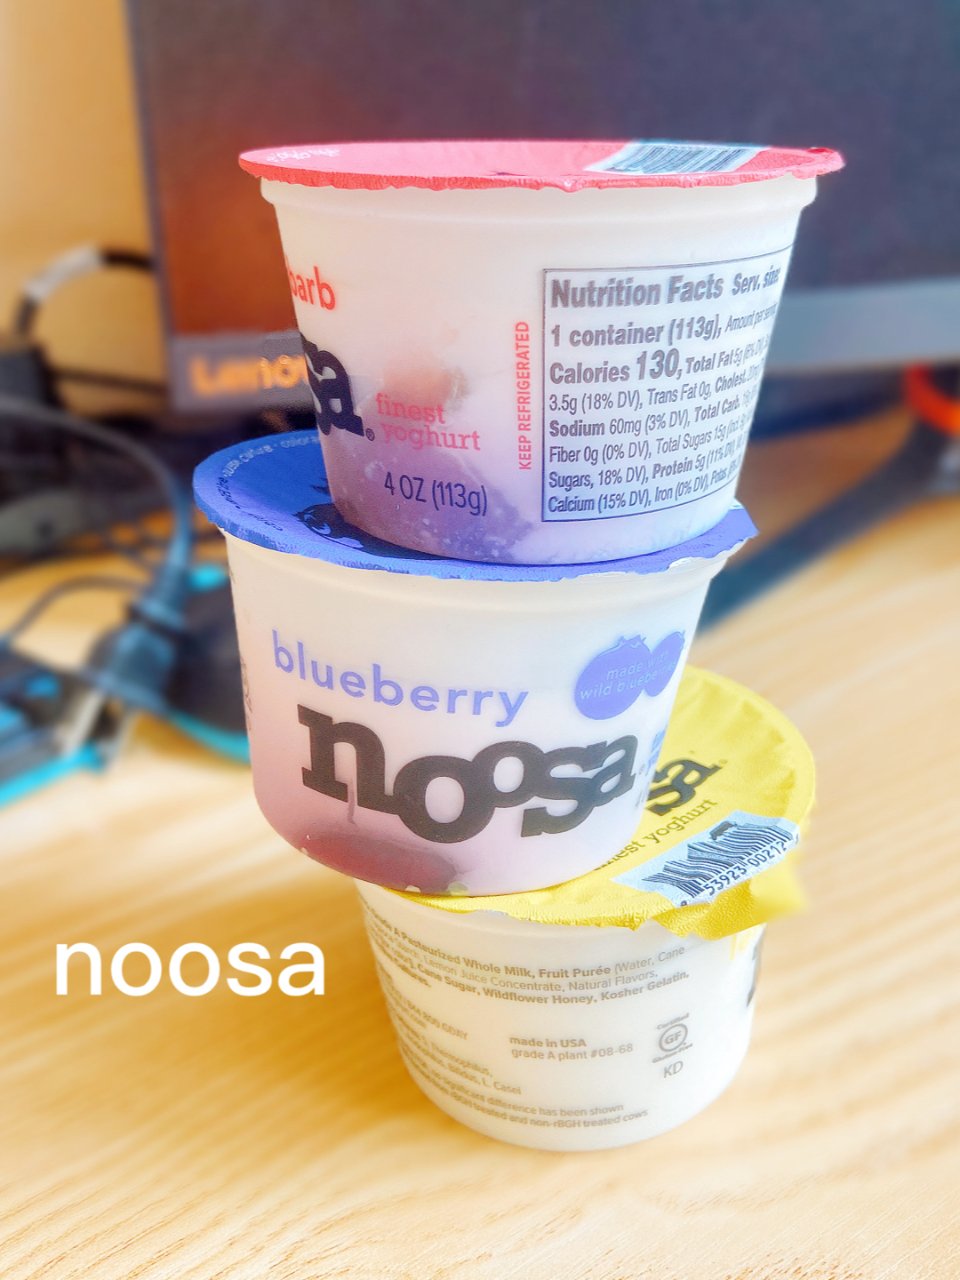 夏日必备的好酸奶 打卡 noosa...